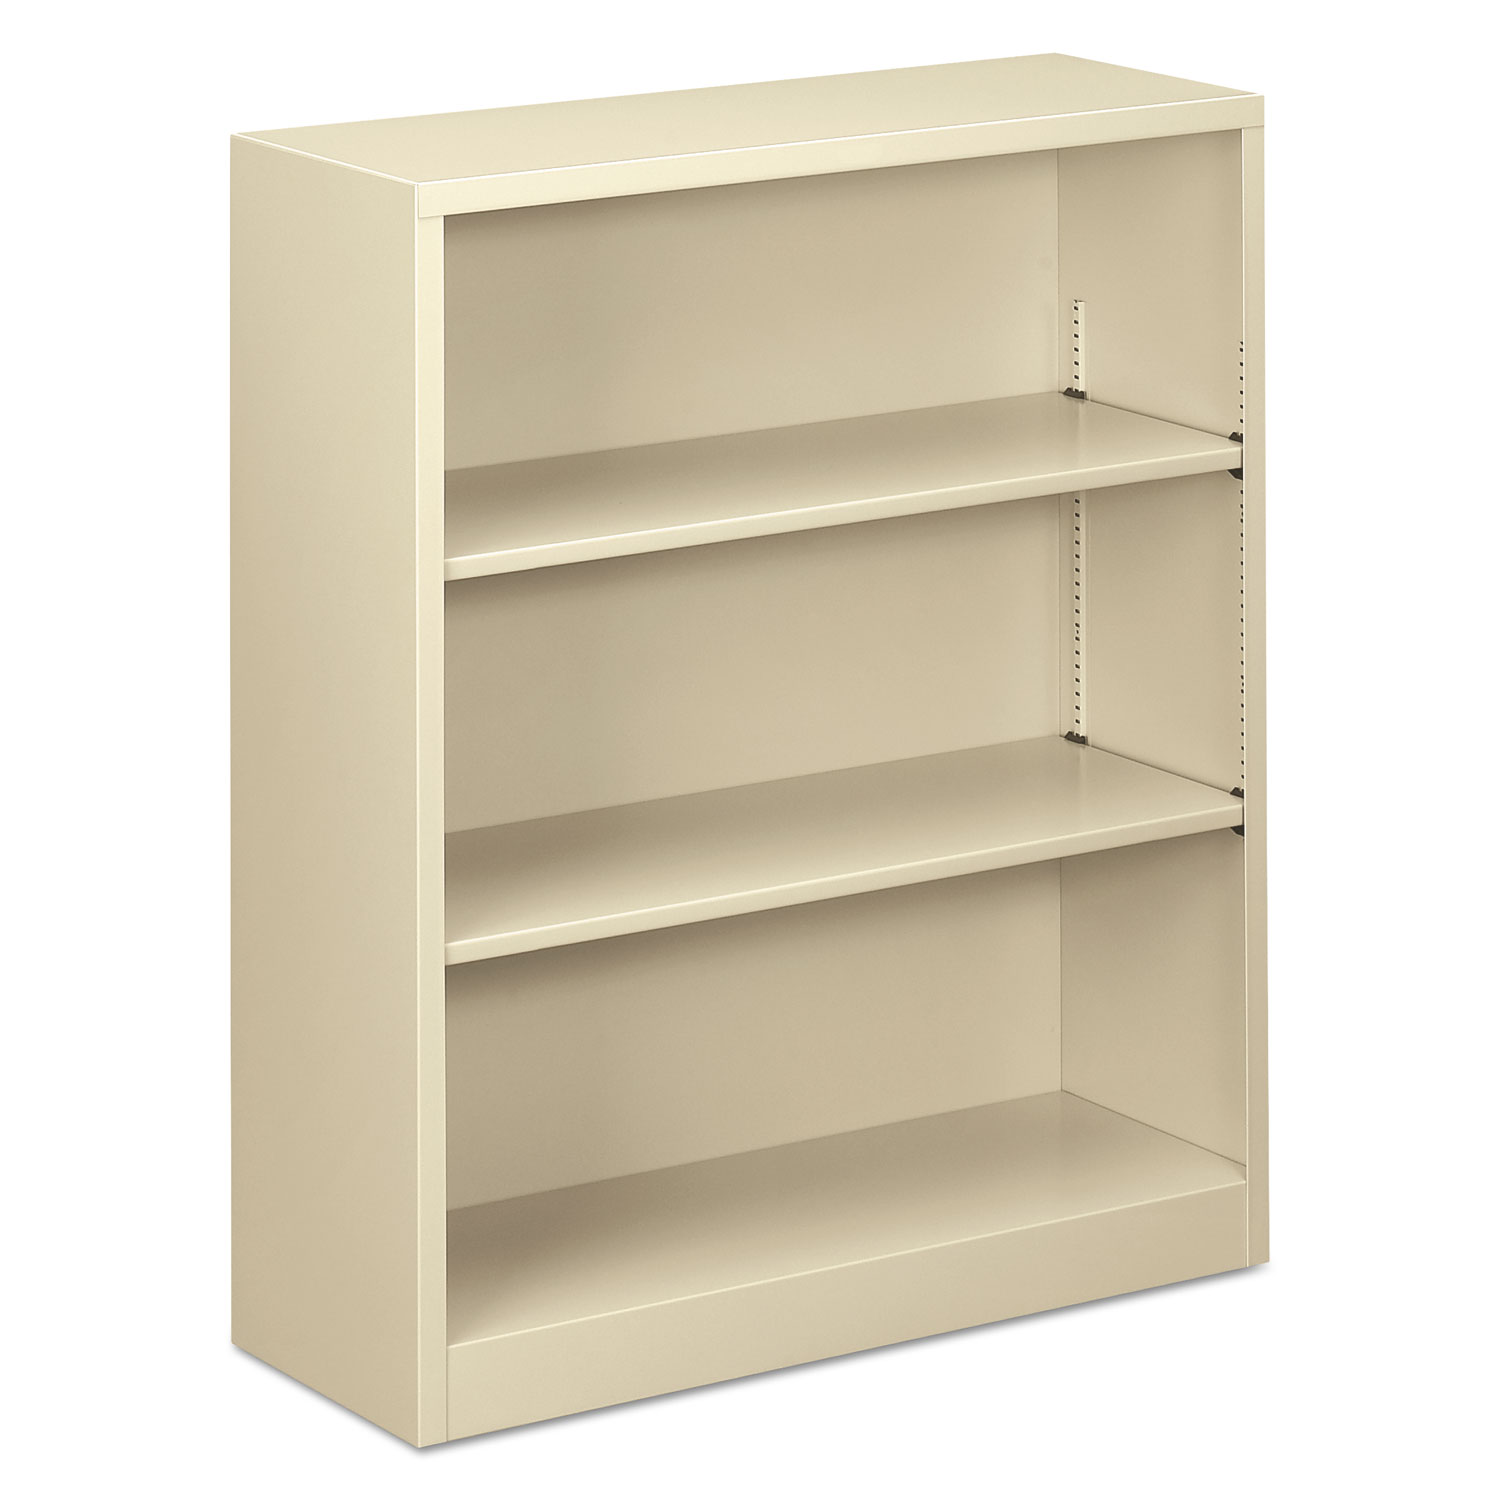  Alera ALEBCM34135PY Steel Bookcase, 3-Shelf, 34.5w x 12.63d x 41h, Putty (ALEBCM34135PY) 